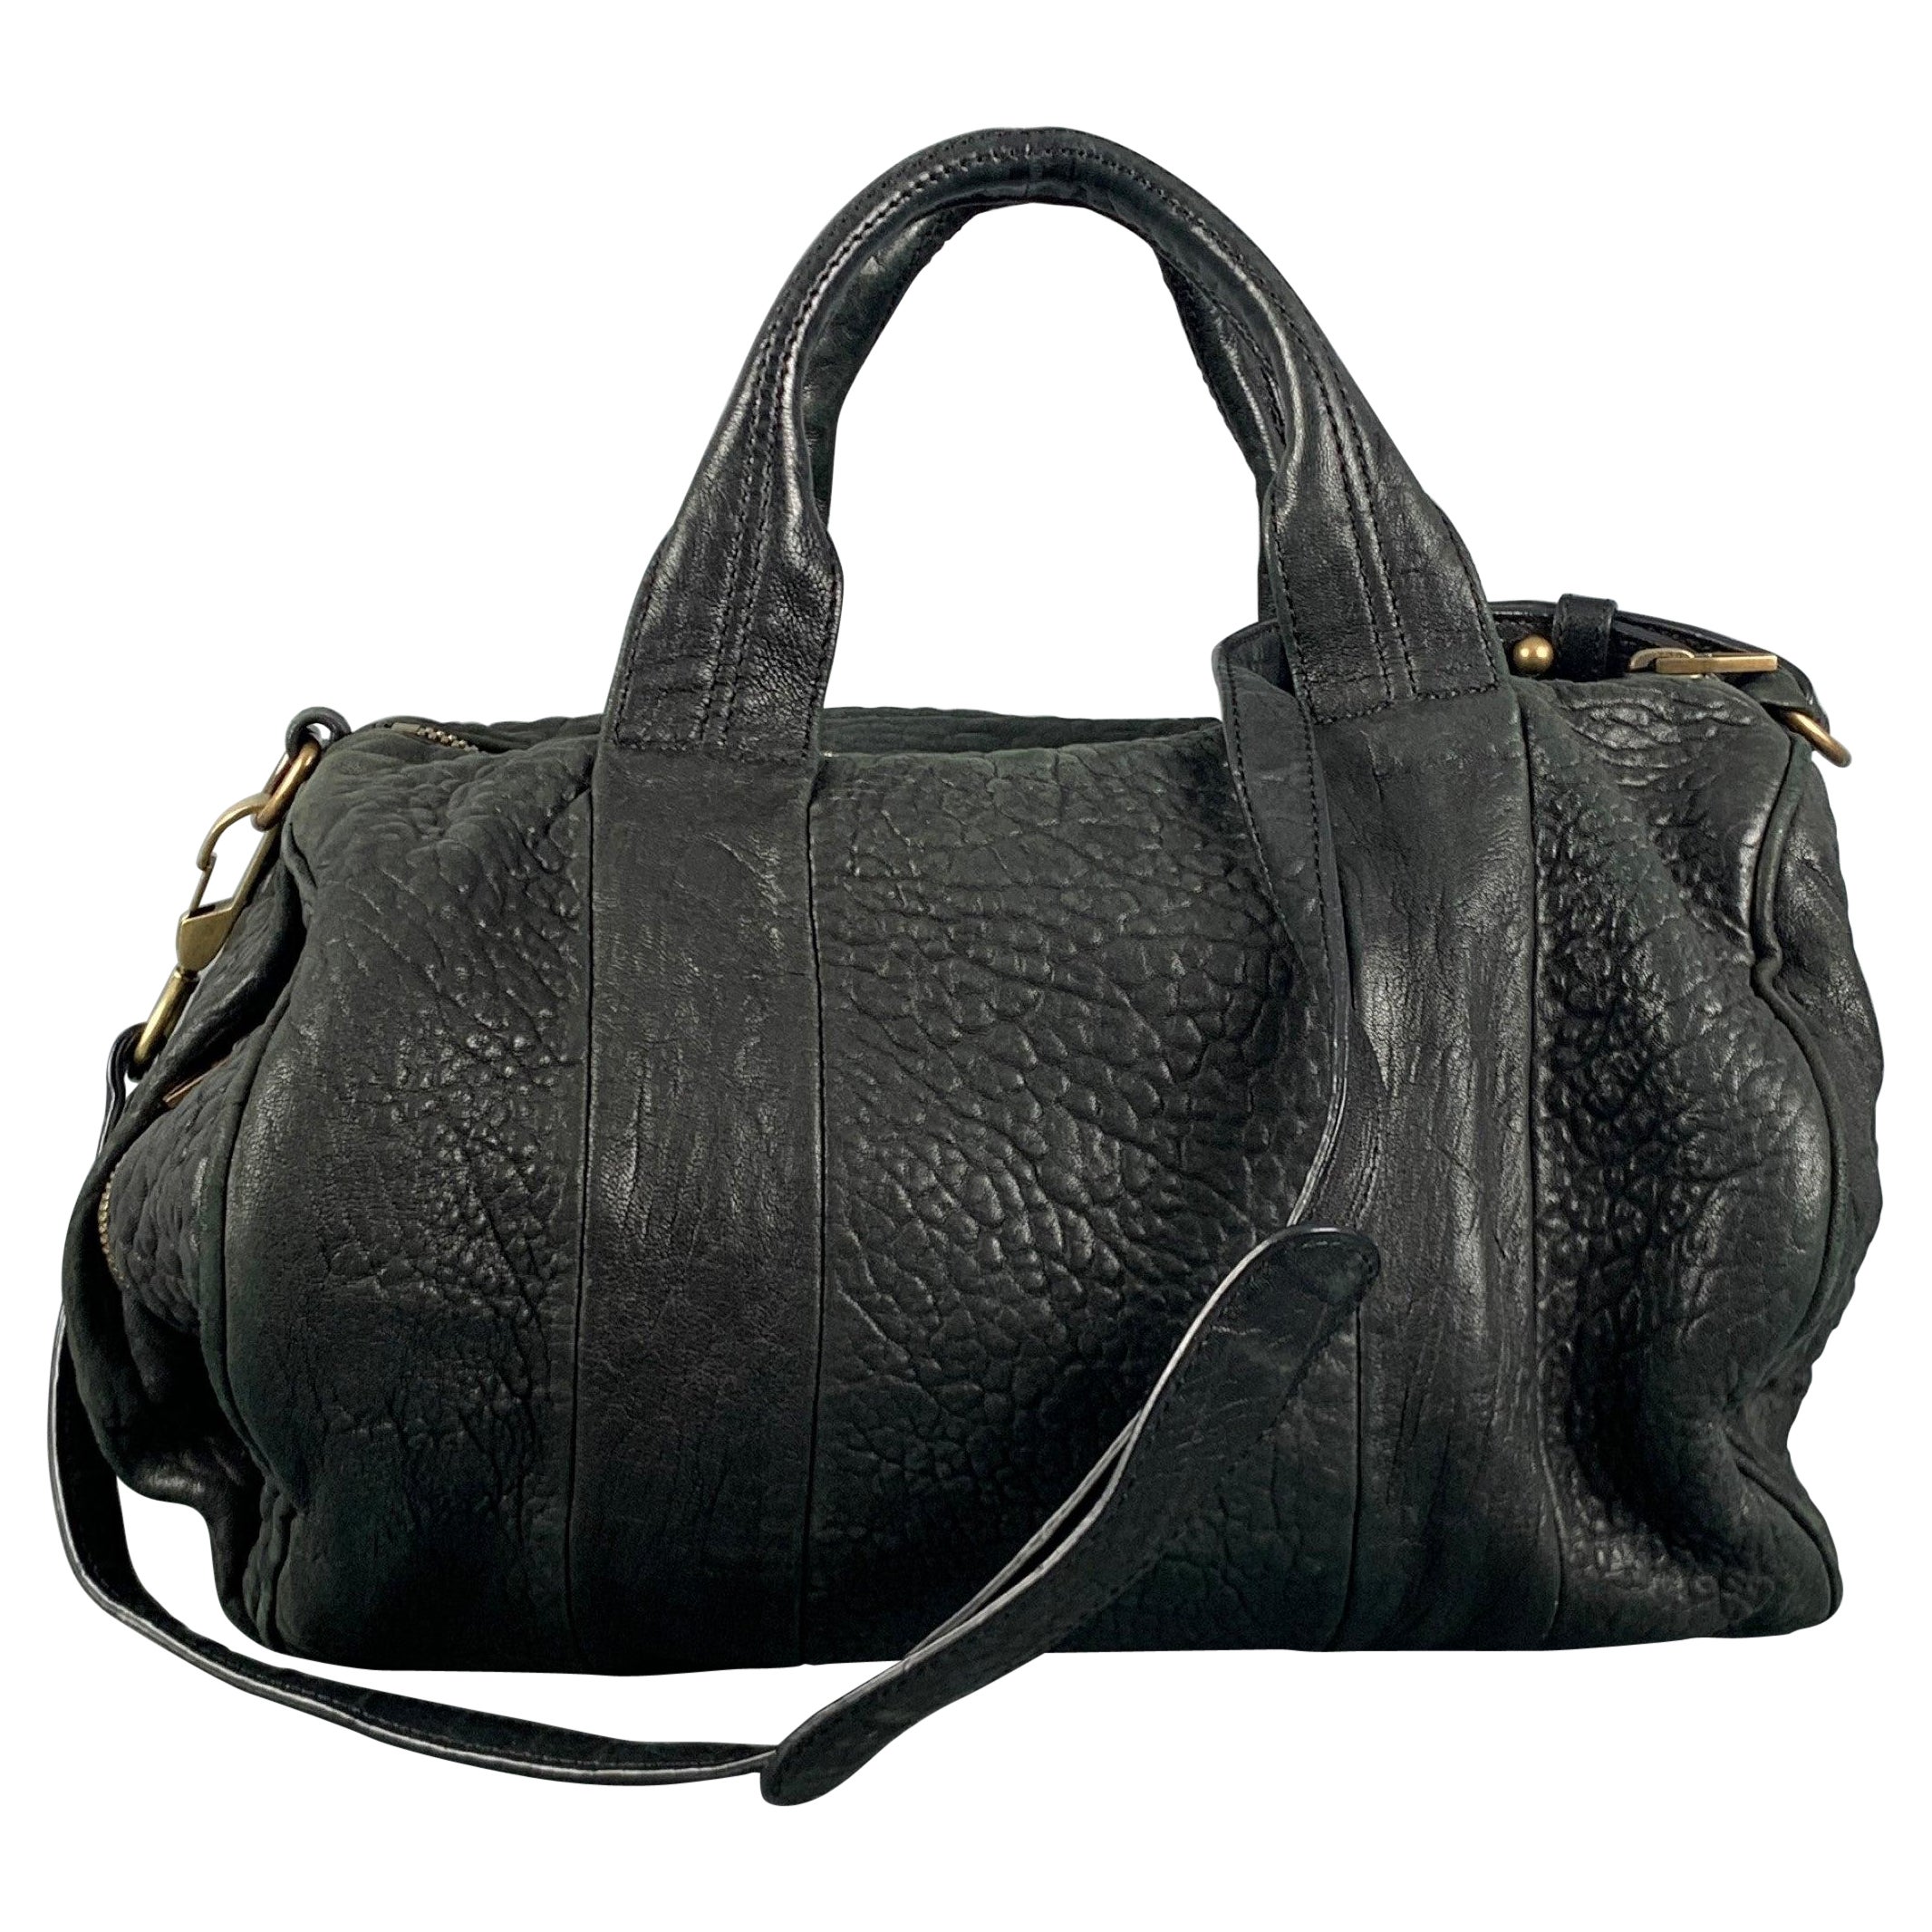 ALEXANDER WANG Black Wrinkled Leather Handbag For Sale